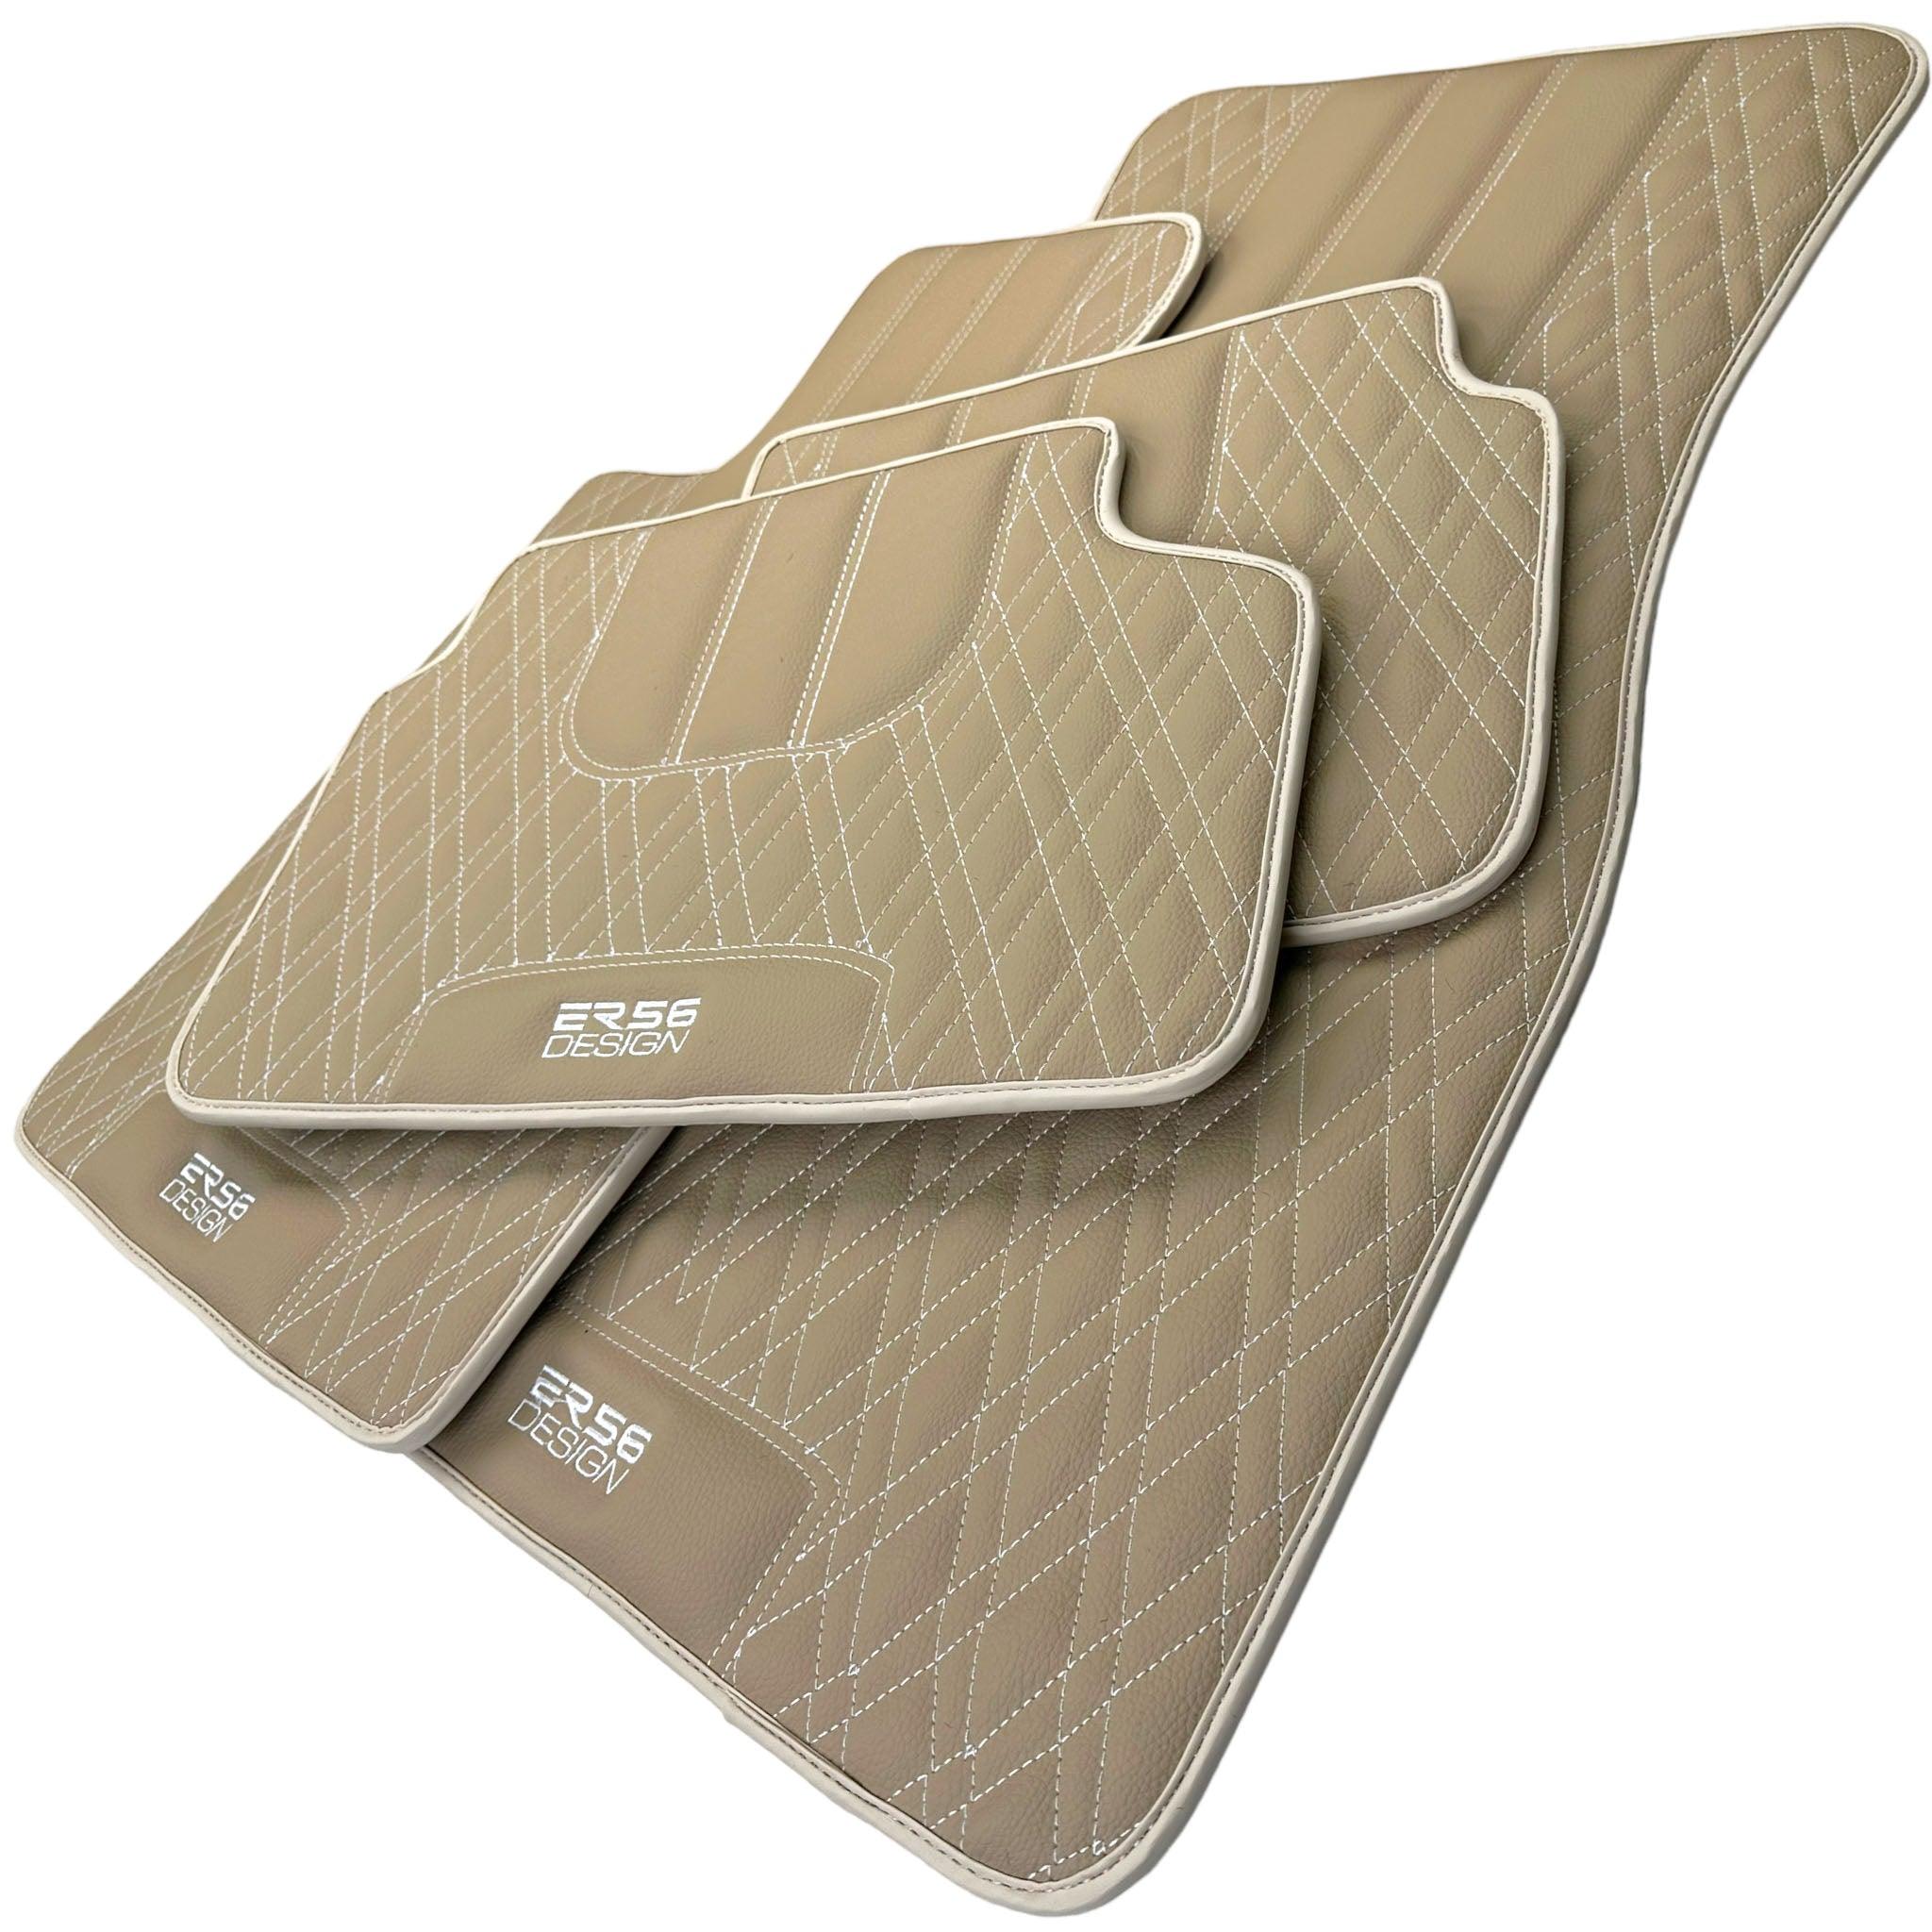 Beige Leather Floor Floor Mats For BMW X5 Series E53